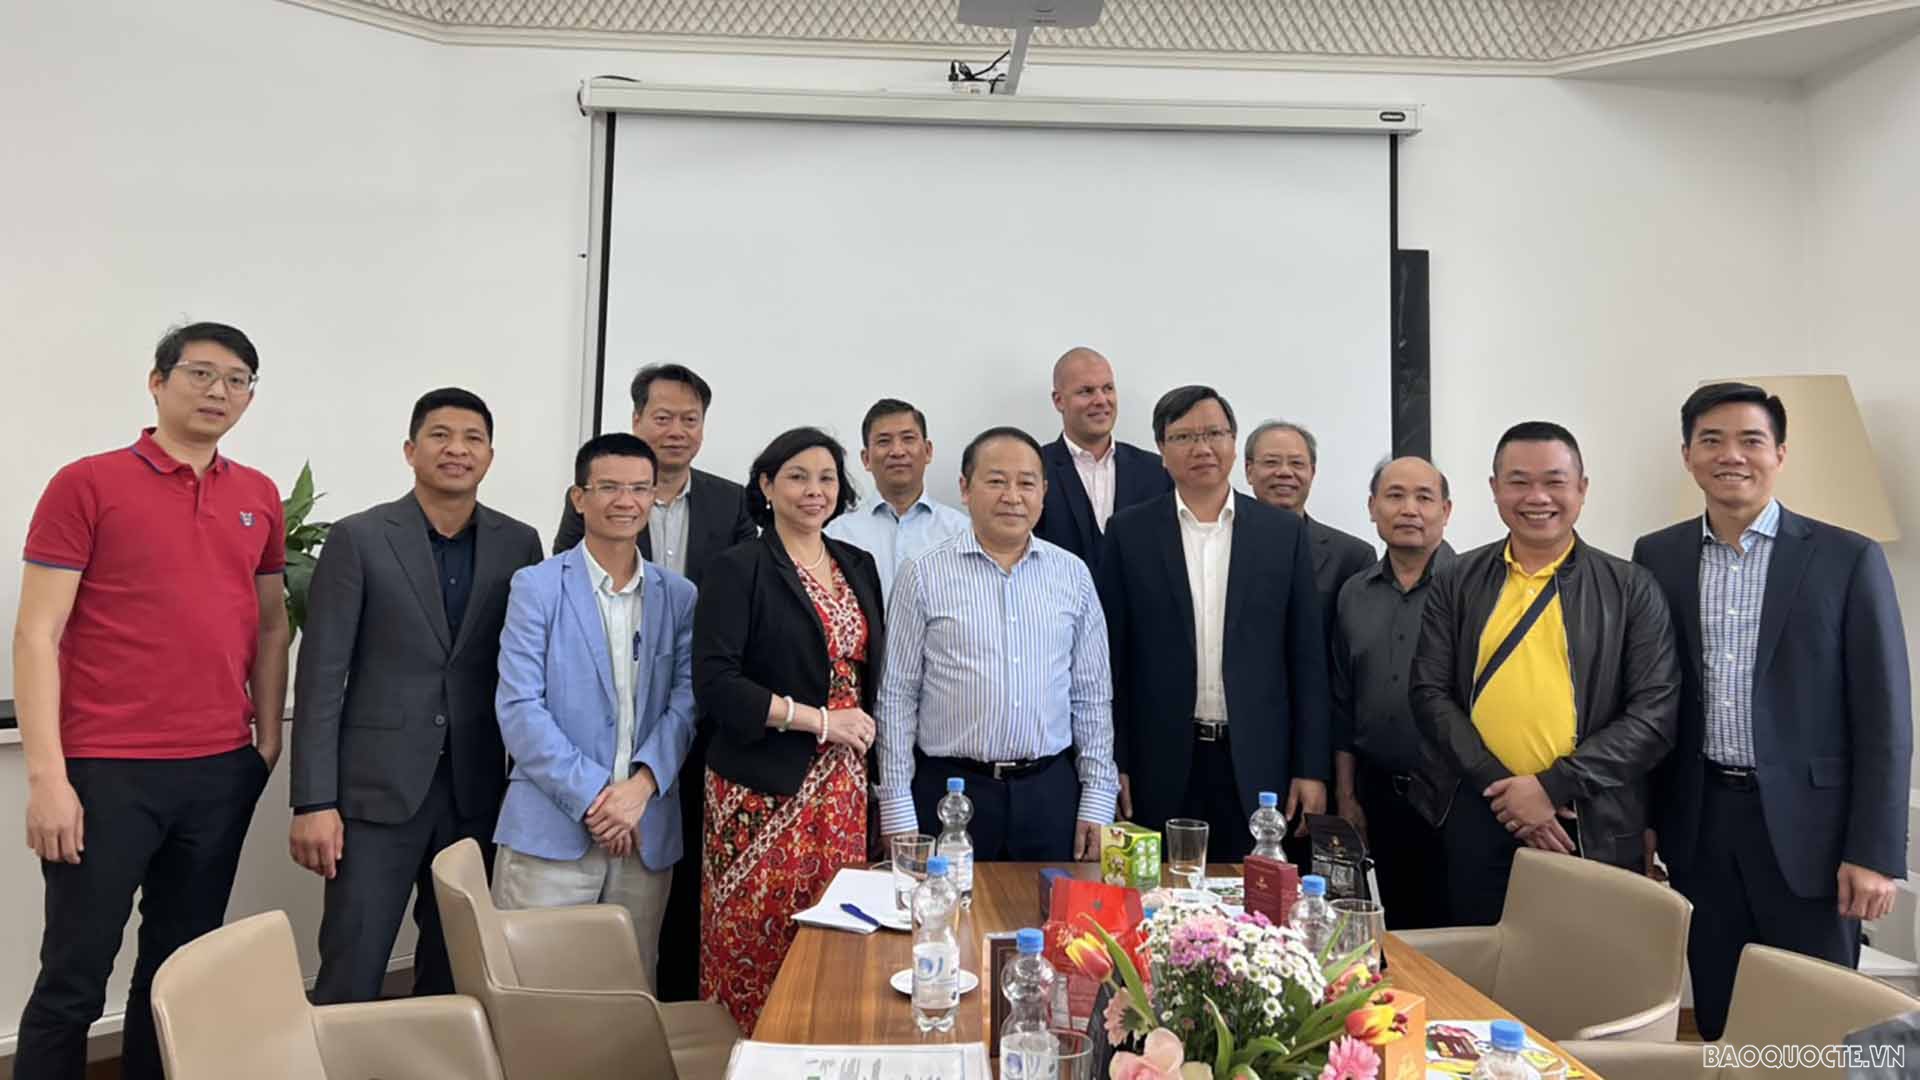 Tổng lãnh sự quán Việt Nam tại Frankfurt tổ chức cuộc gặp gỡ của đoàn doanh nghiệp Việt Nam thuộc Tập đoàn Agri-Food với một số doanh nghiệp Việt kiều tại Đức trong lĩnh vực xuất nhập khẩu nông sản, thực phẩm, trái cây, đồ uống